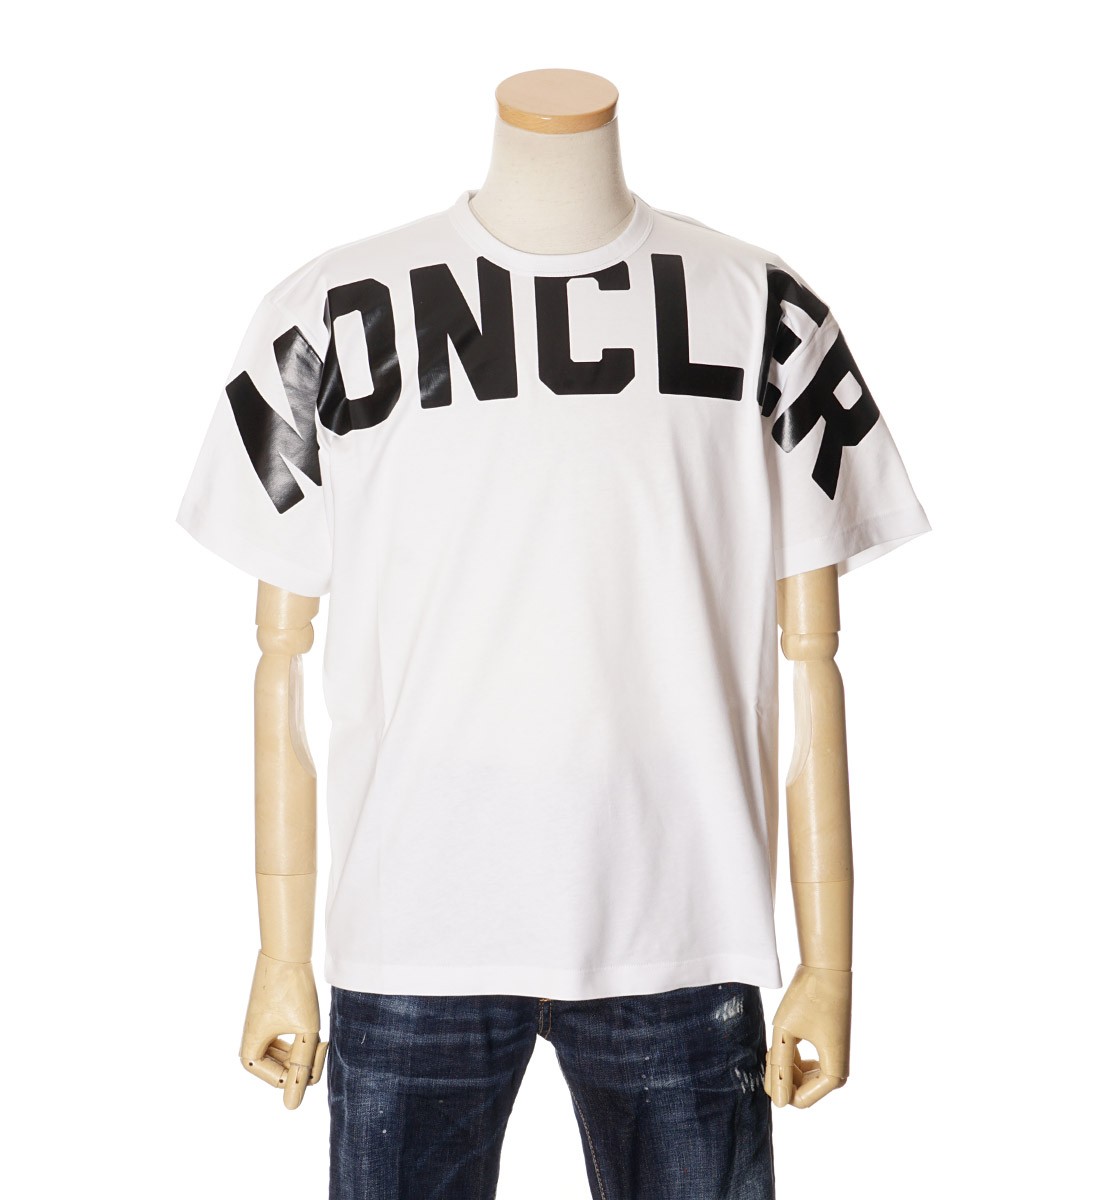 21正規激安 国内発送 Moncler メンズ Tシャツ 可愛いデザイン 21ss 3色 当店人気の限定モデルが再々々入荷 Www Premiervbleague Com